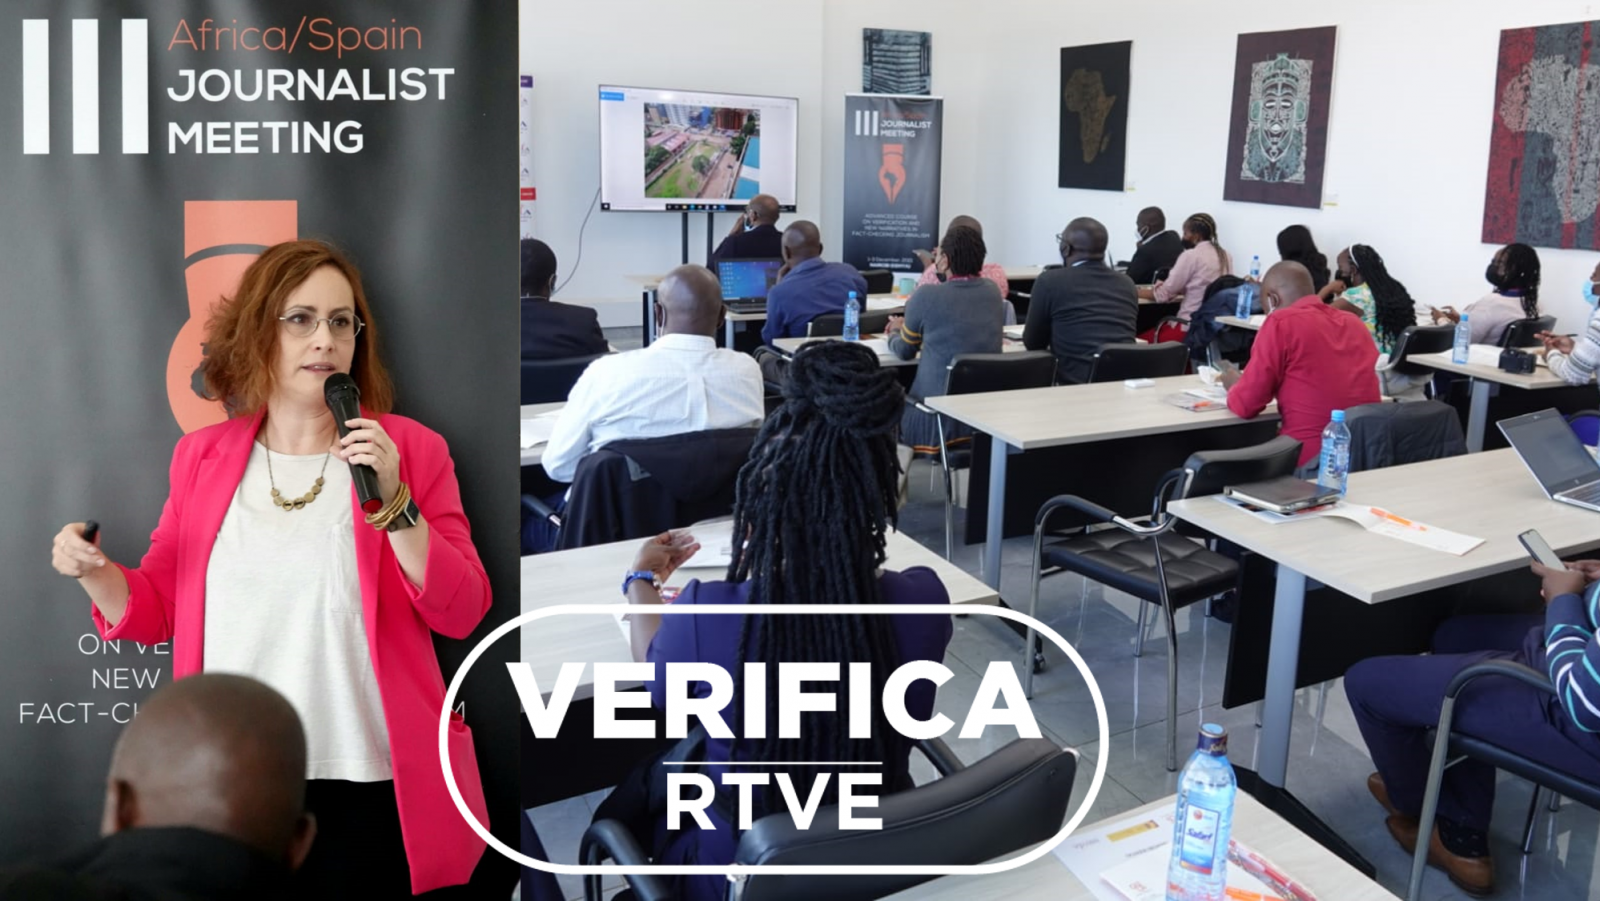 Myriam Redondo responsable de VerificaRTVE en el Encuentro de periodistas África España con sello VerificaRTVE